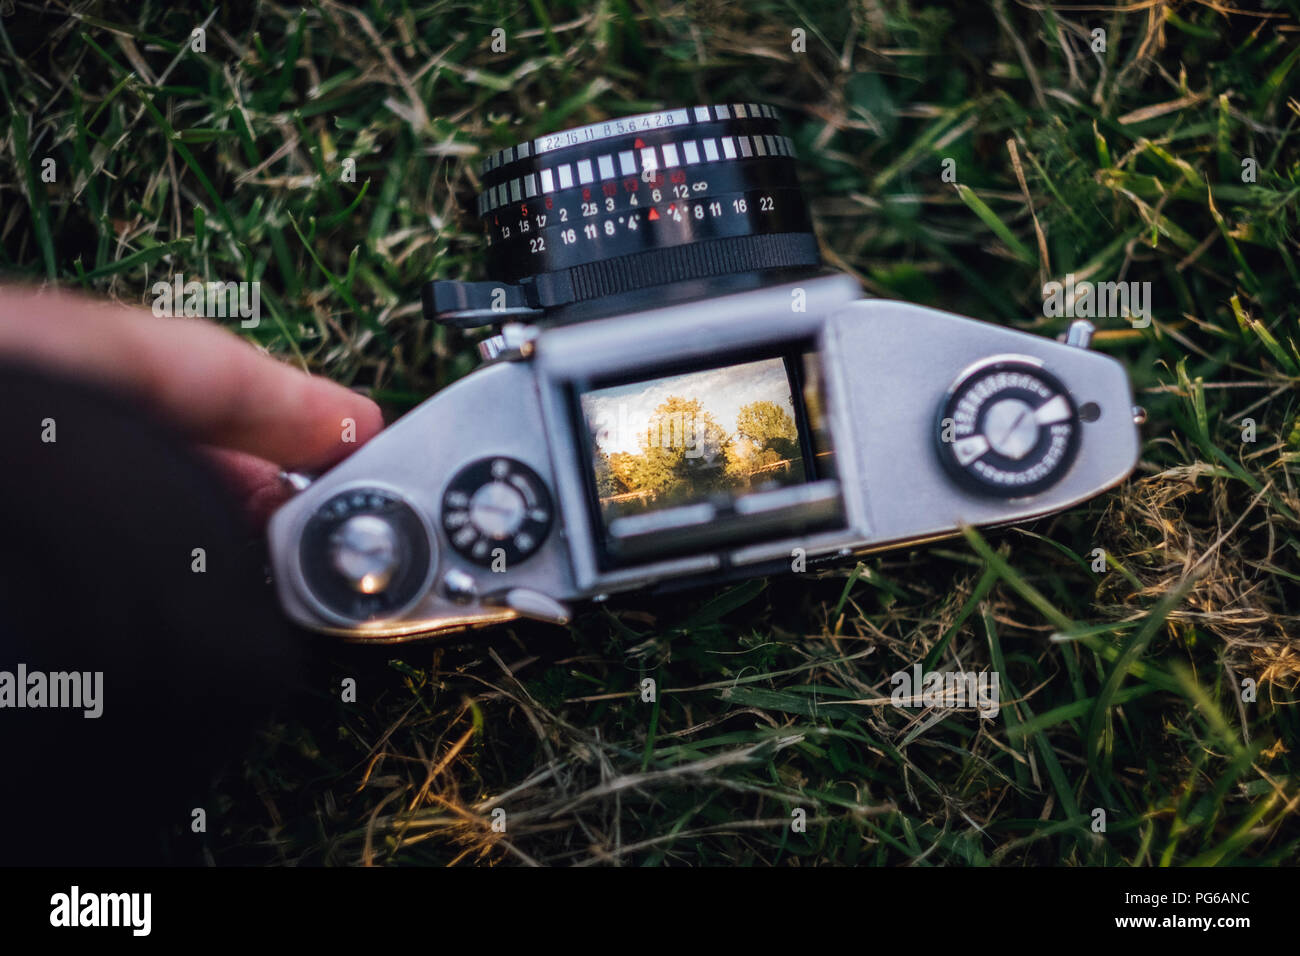 Analogue camera lying on grass Stock Photo